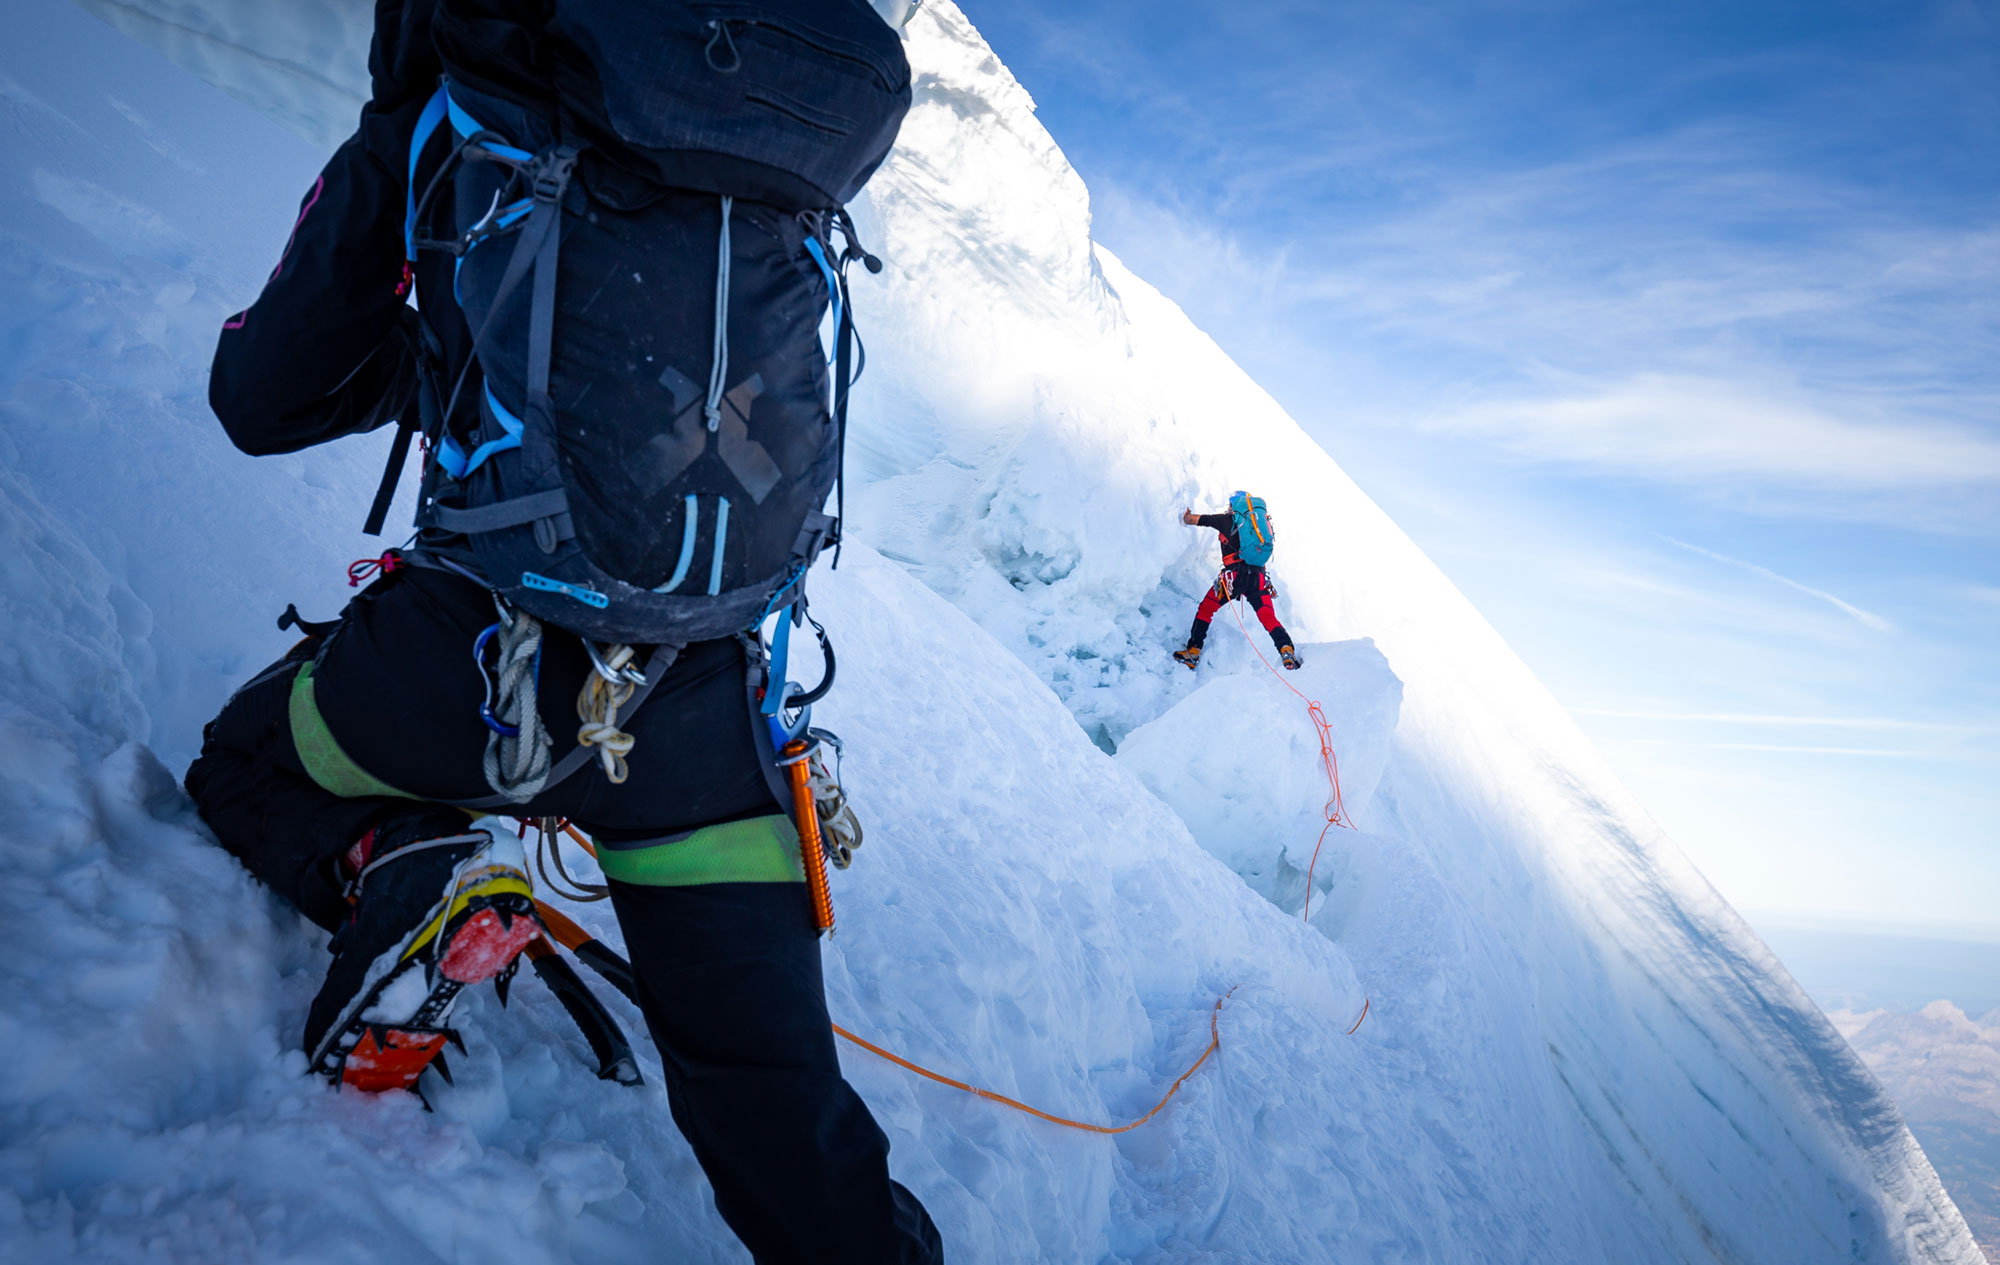 La importancia del estilo alpino en la primera ascensión al Jannu este